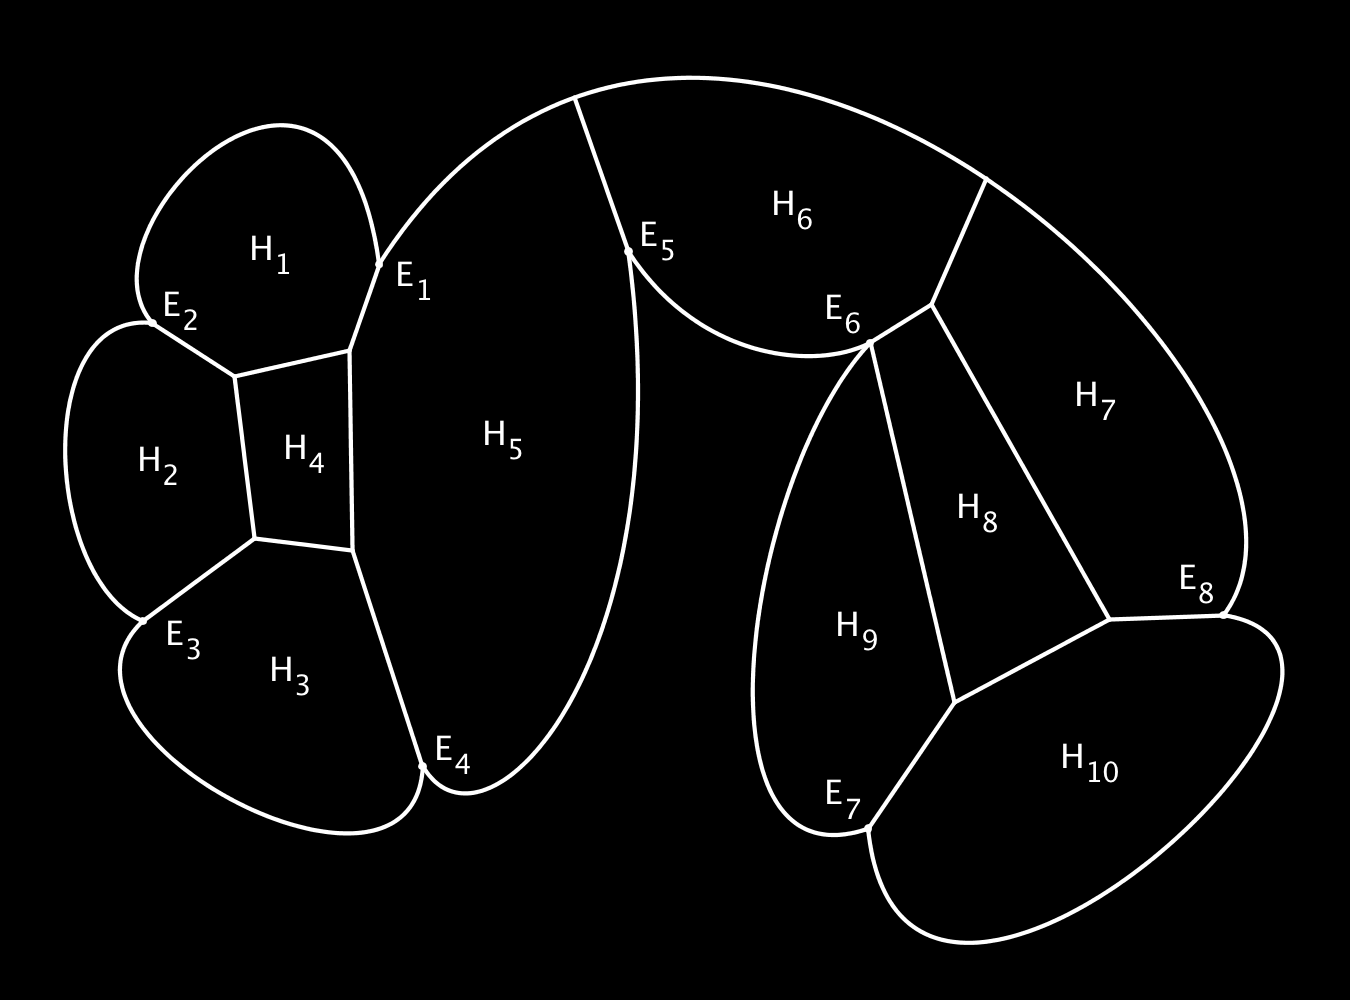 Legyen T i az i-edik és az azt követő csúcs közötti szakasz és a fenti módon hozzájuk megalkotott konvex görbe által közrezárt terület.